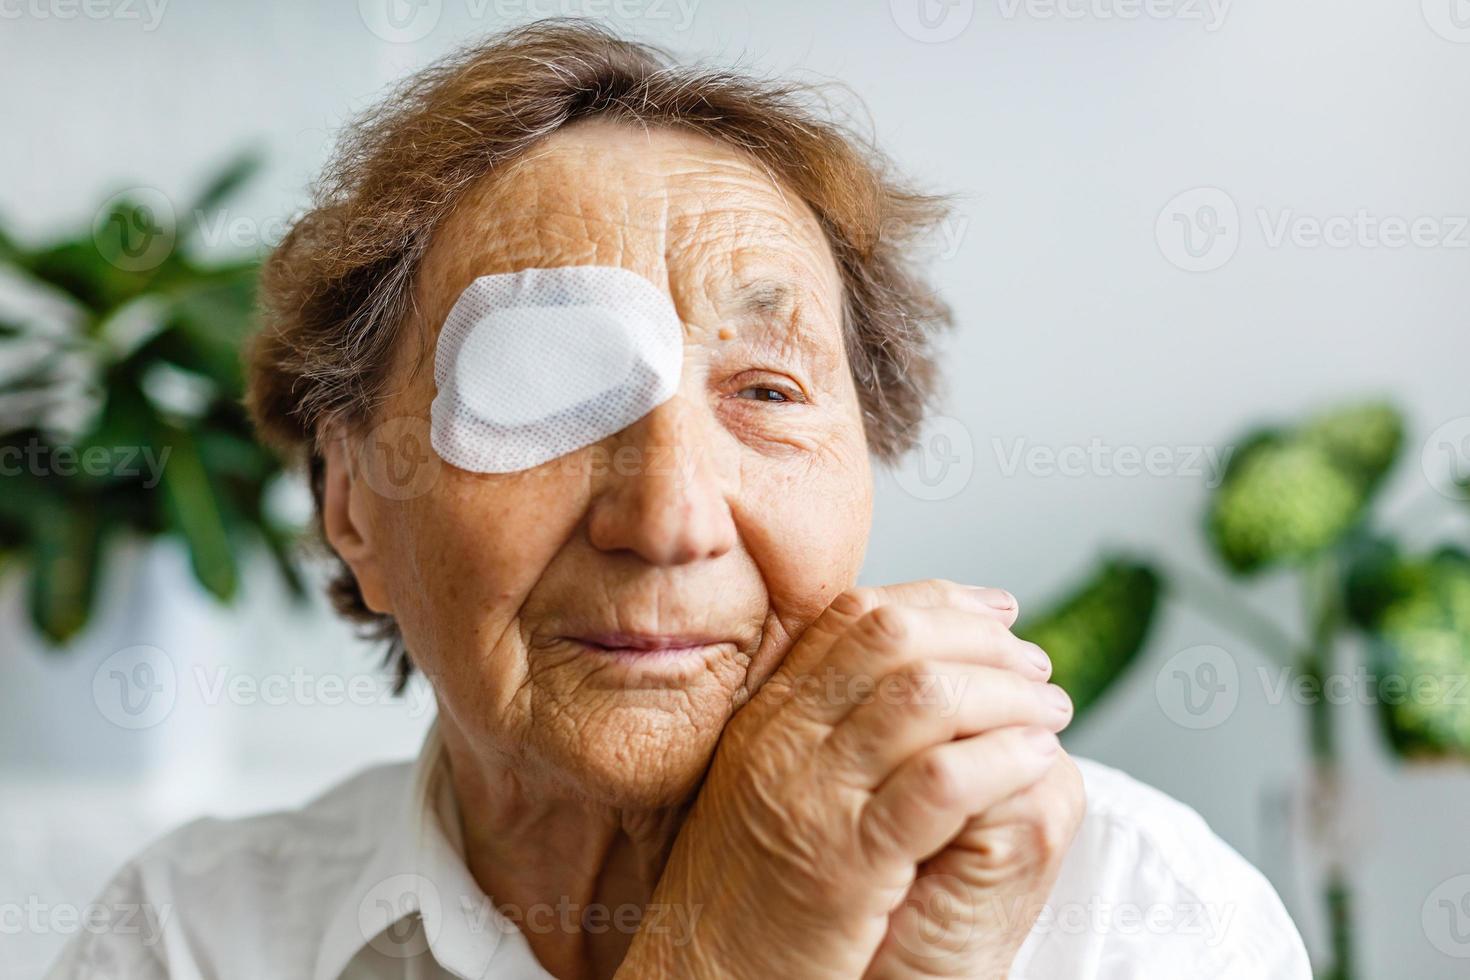 äldre använda sig av öga skydda beläggning efter grå starr kirurgi. foto